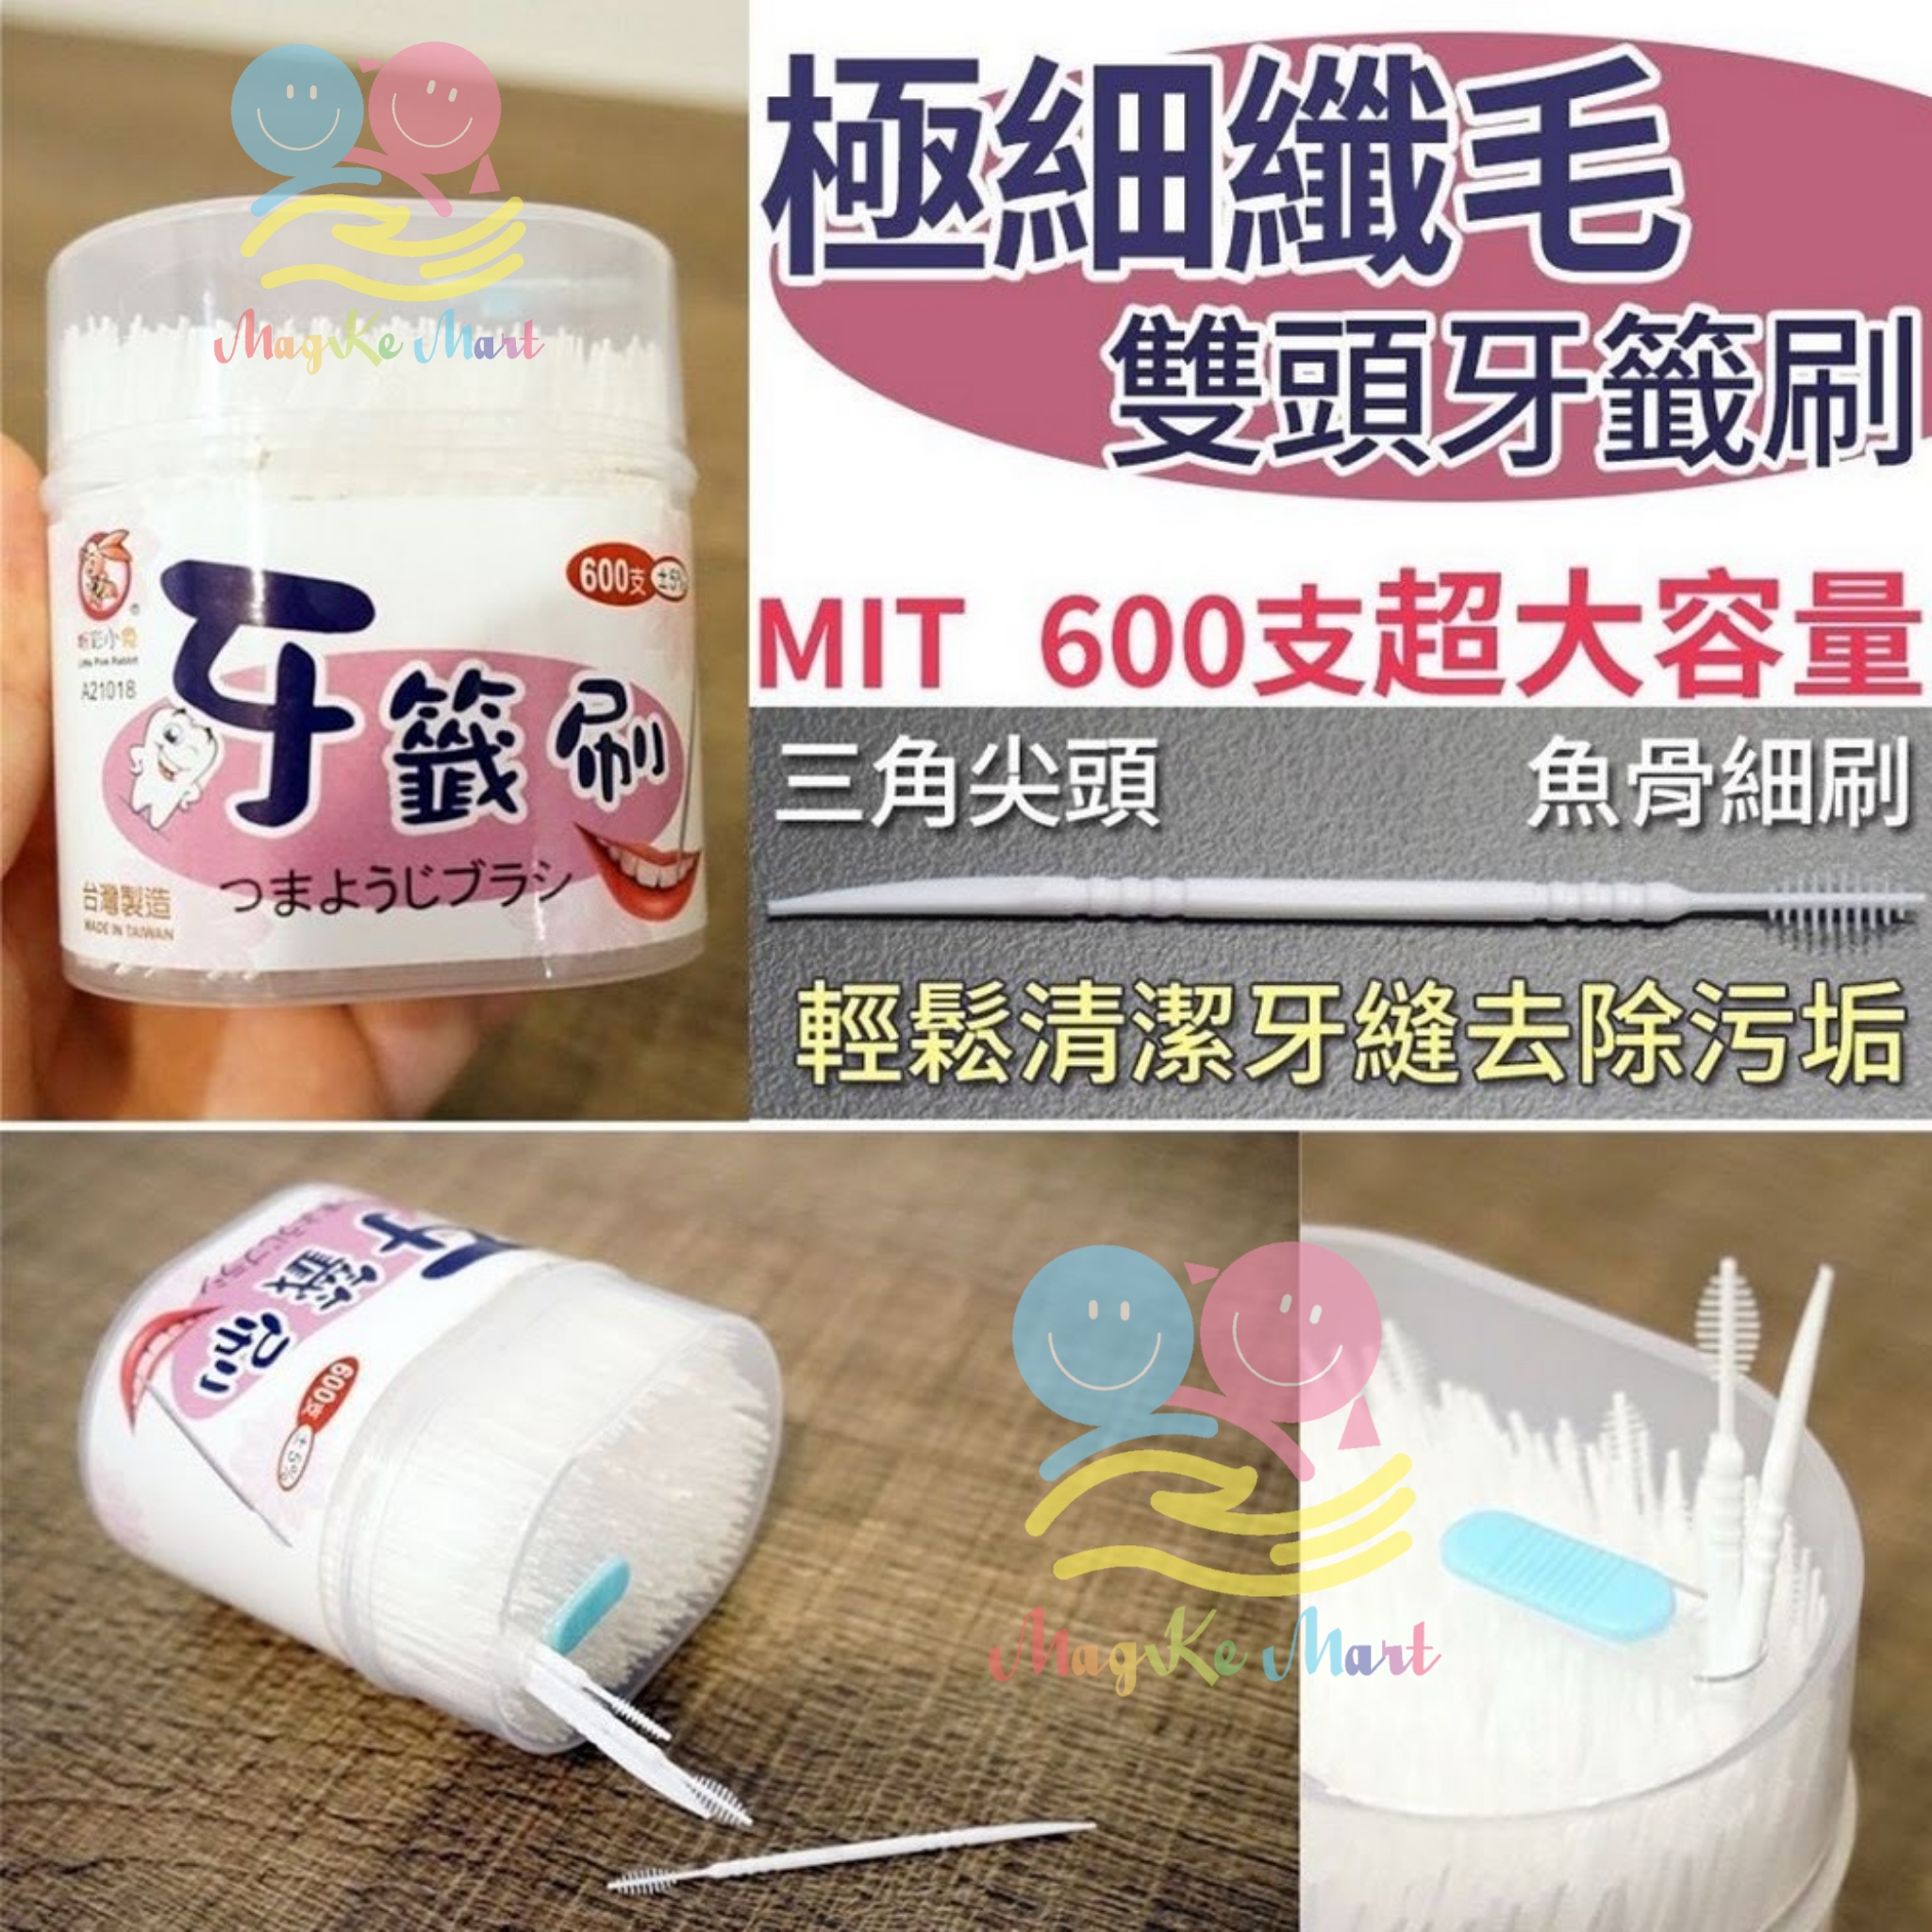 台灣極細纖毛雙頭牙籤刷(約600支)